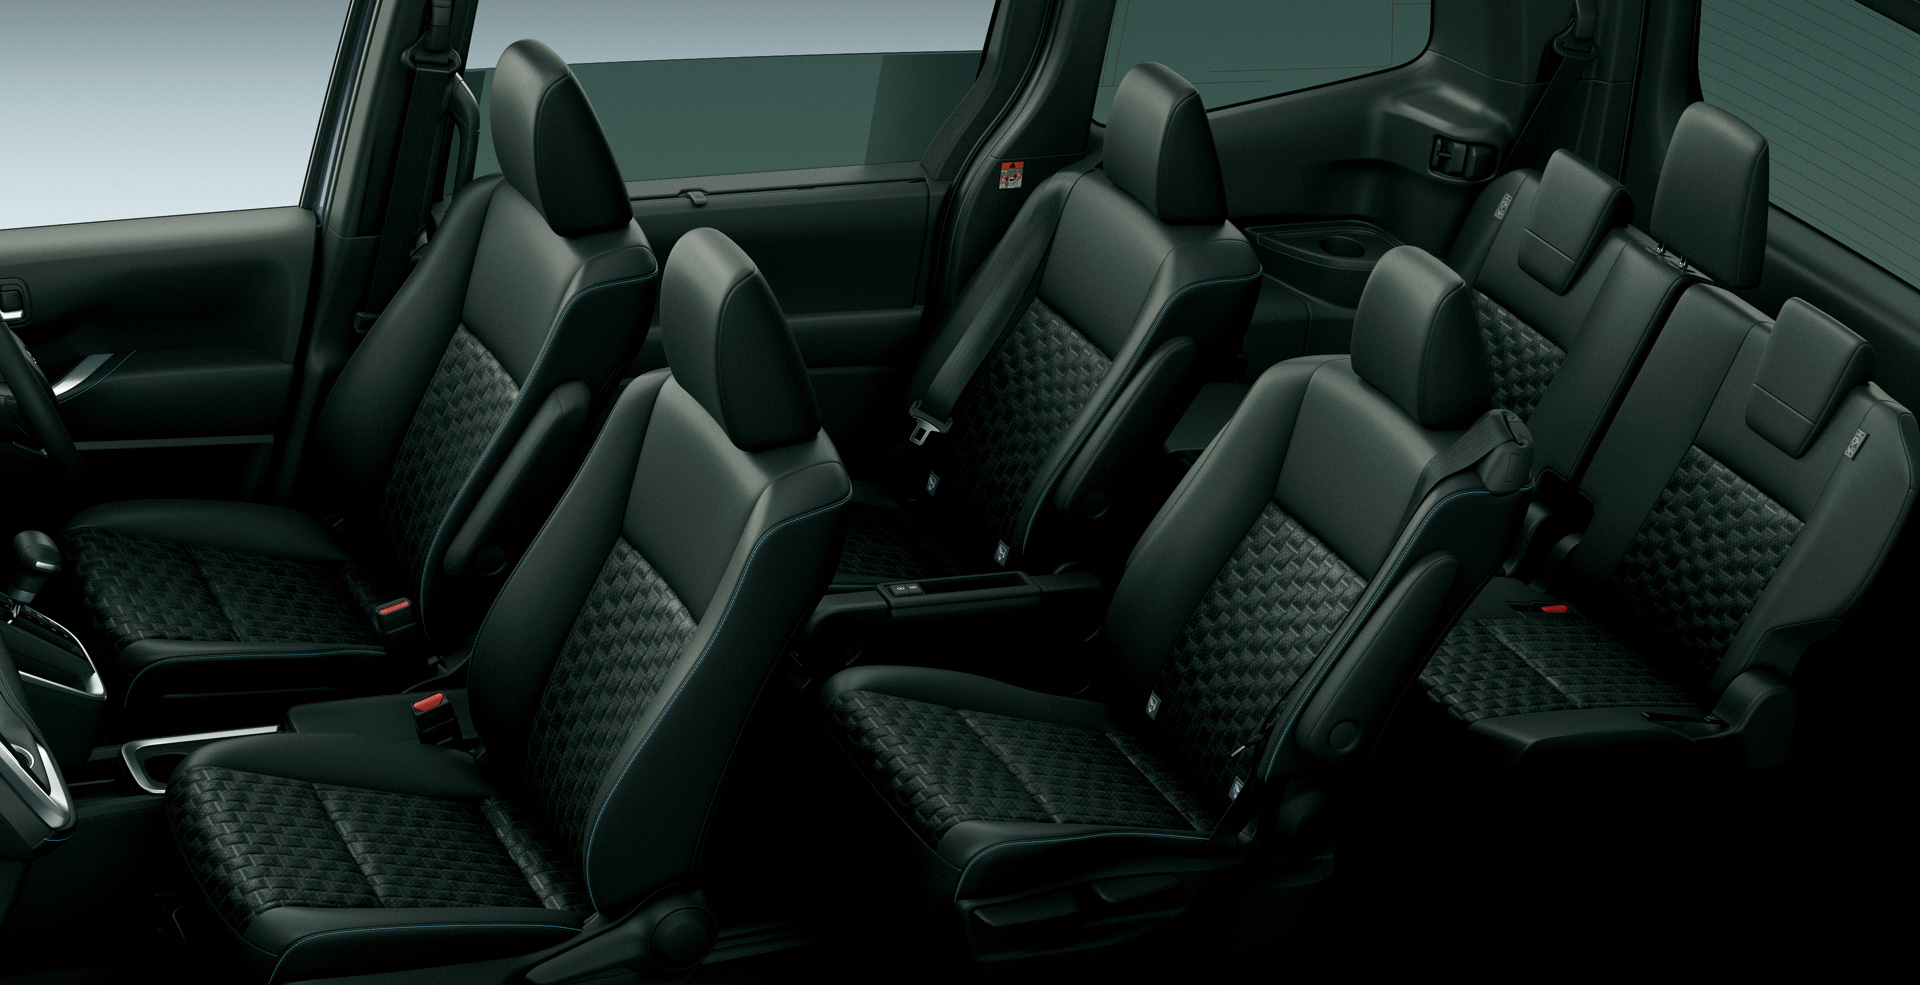 Toyota Voxy interior - Seats